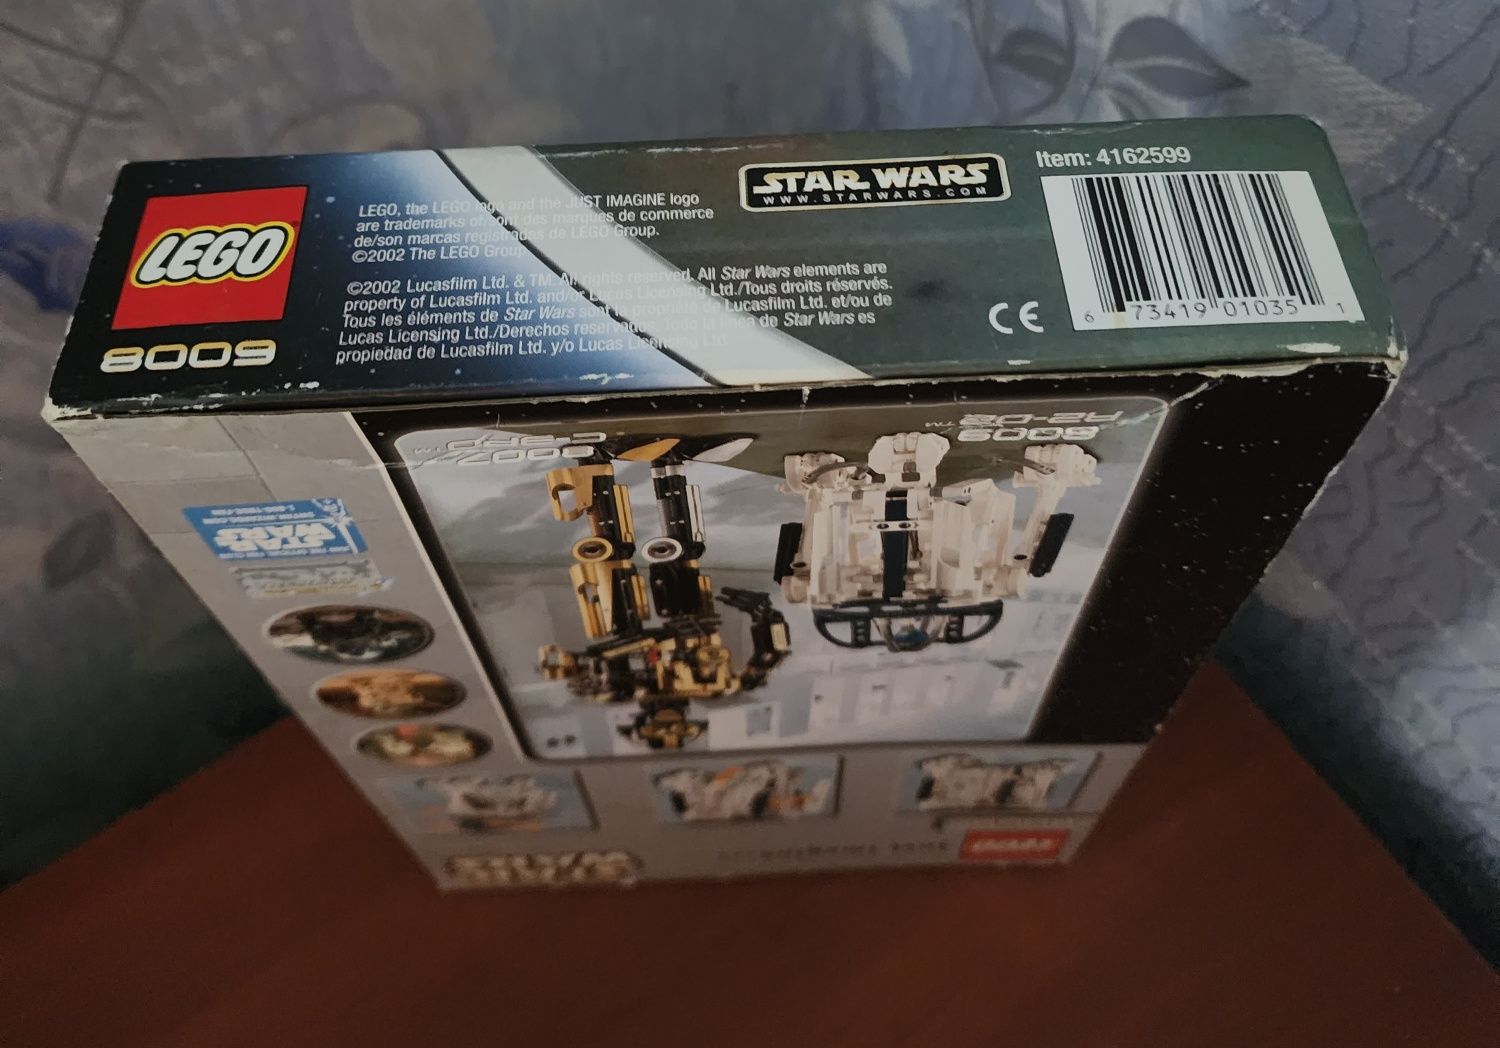 LEGO Star Wars 8009 R2-D2, набор 2002 года, новый, запакован